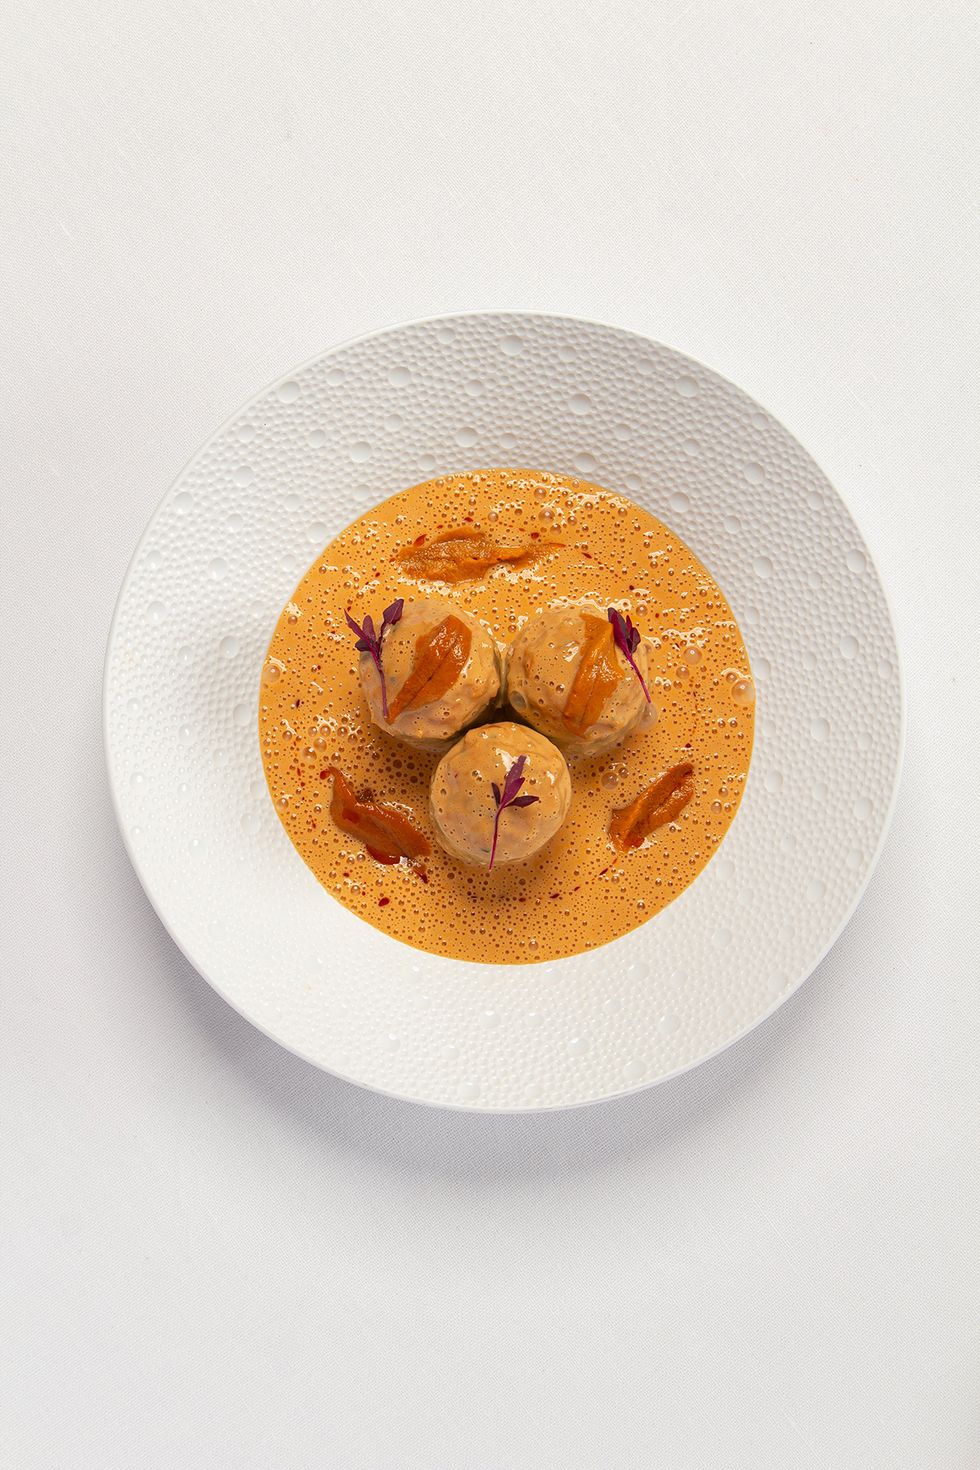 alcachofas rellena de marisco con salsa de erizo, plato del chef jesús sánchez para el restaurante amós en el hotel rosewood villa magna de madrid